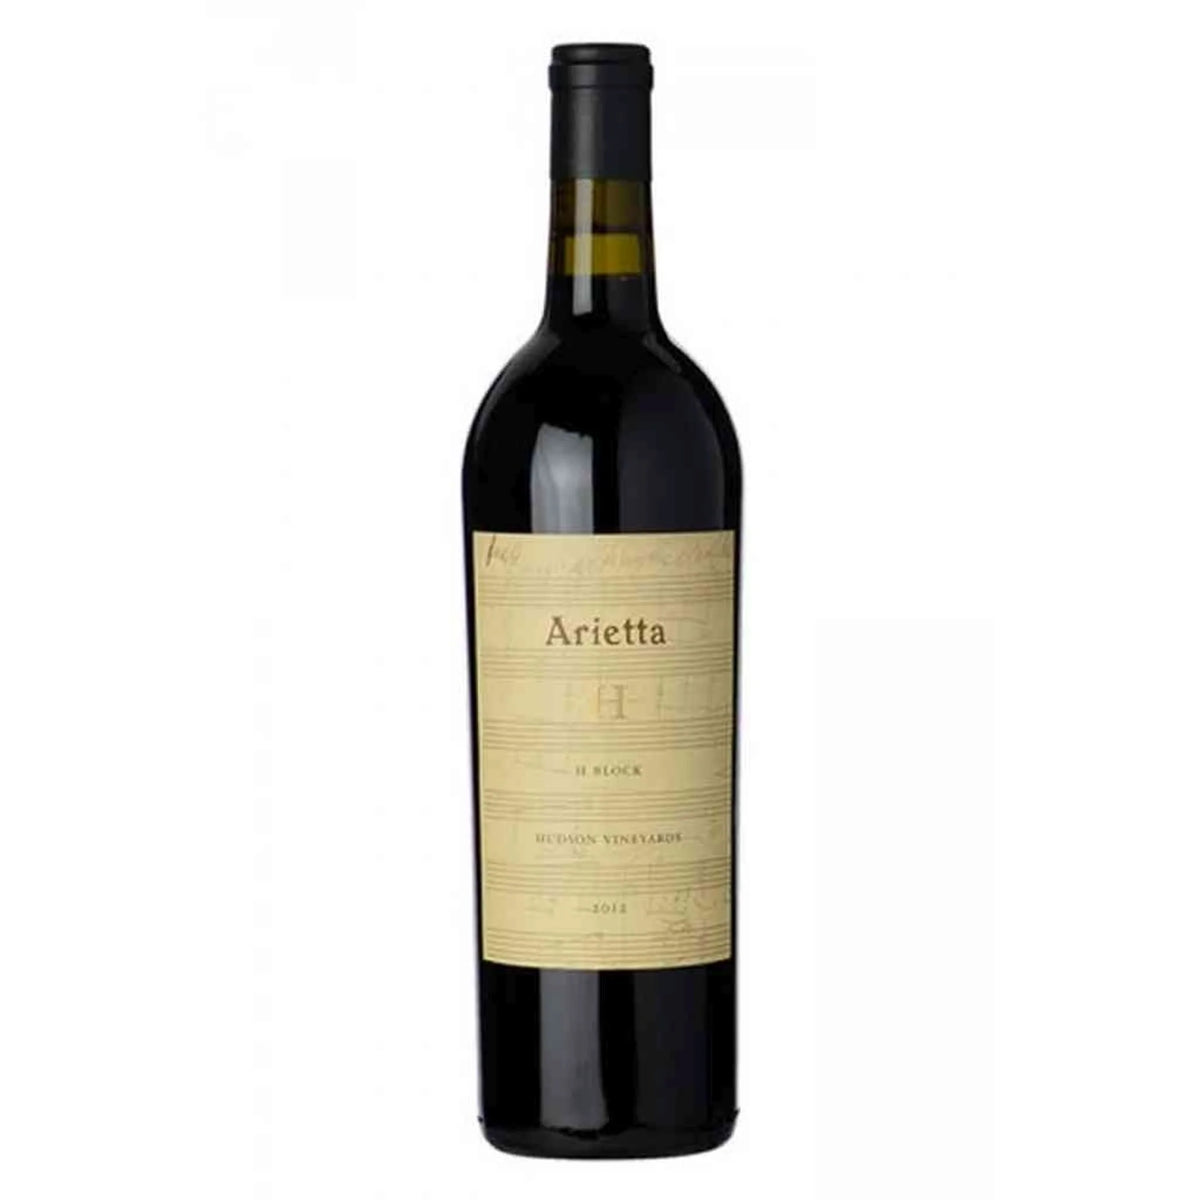 Arietta-Rotwein-Merlot-2014 Merlot Hudson Vineyards-WINECOM